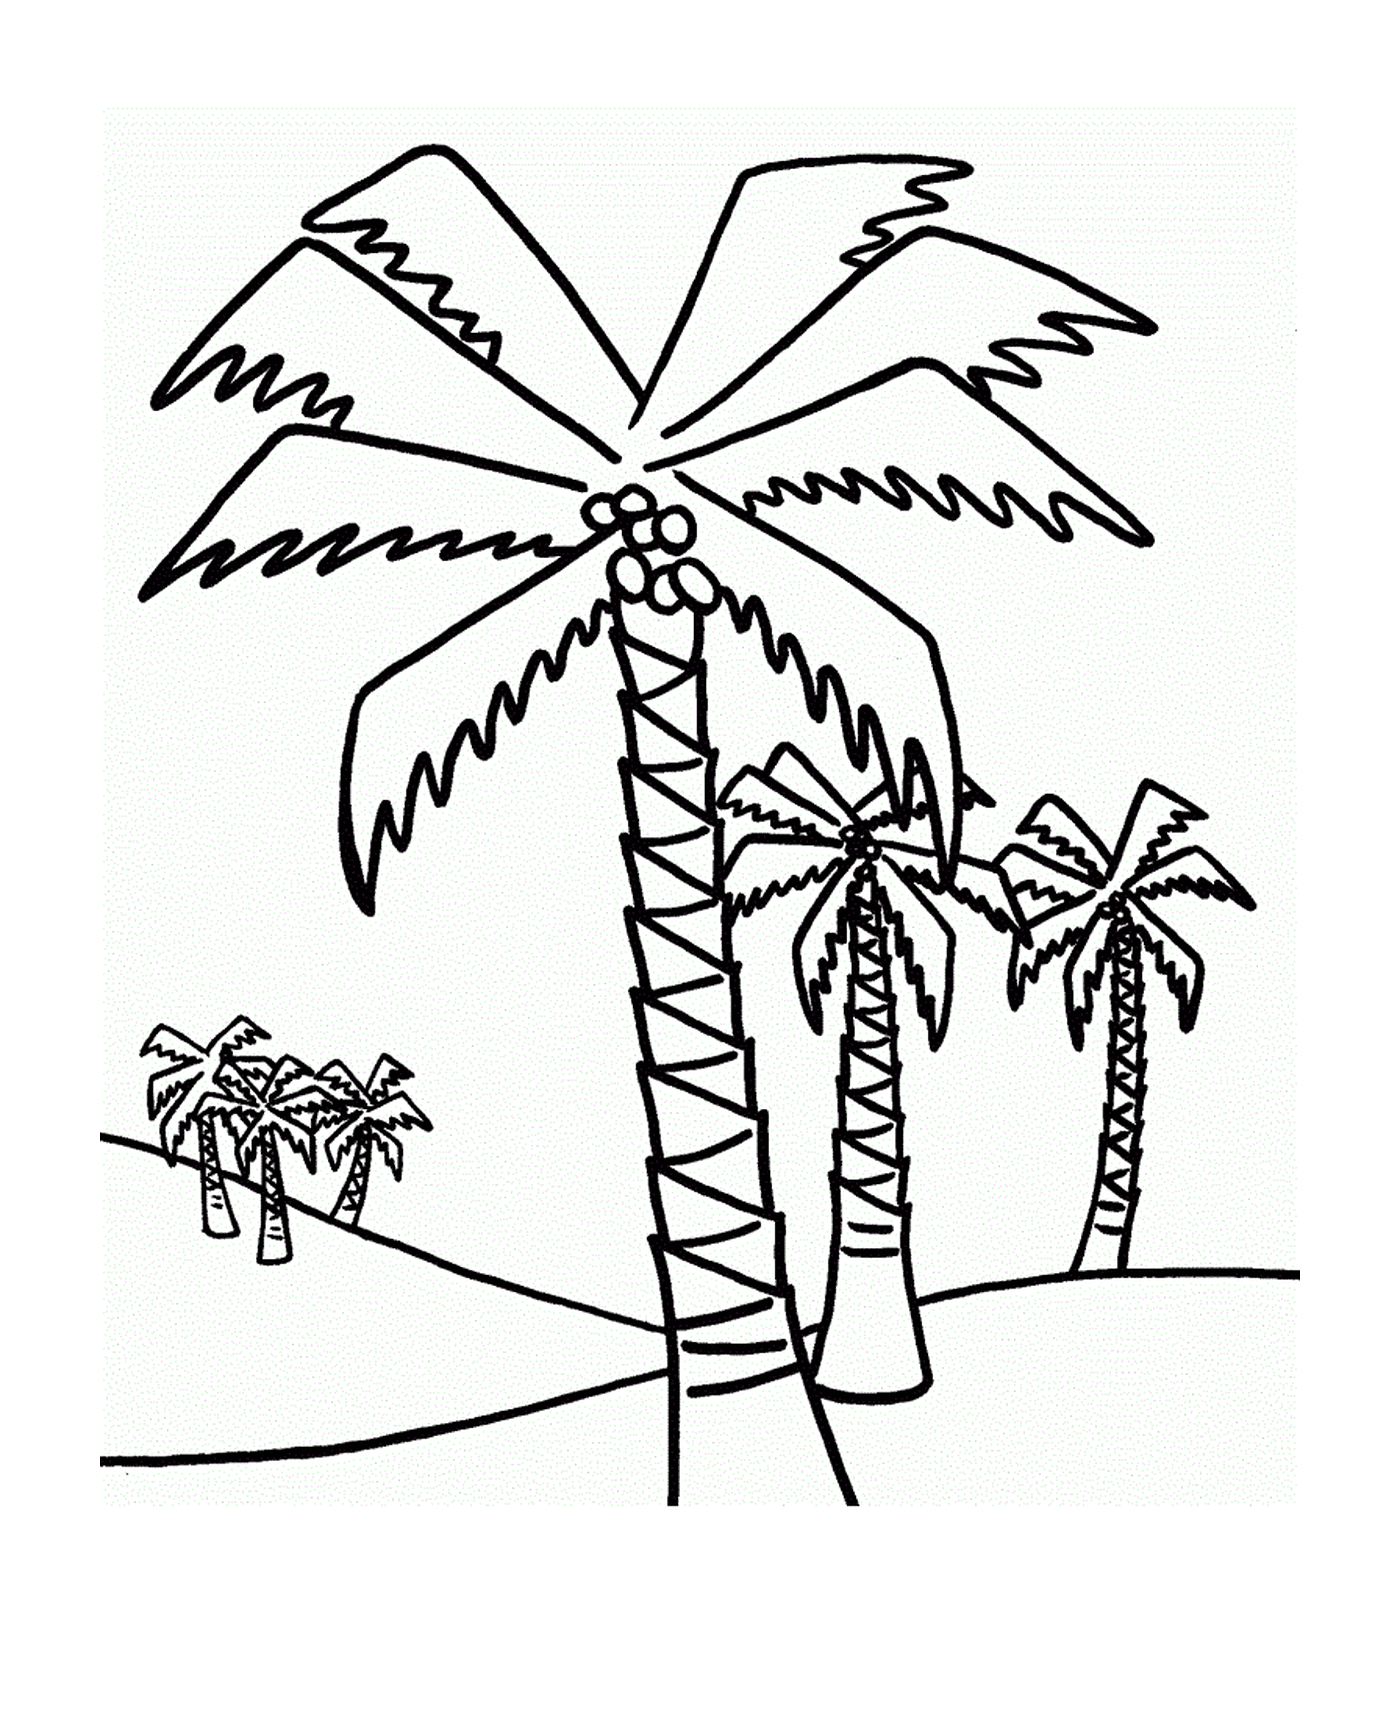  棕榈树,多棵棕榈树 